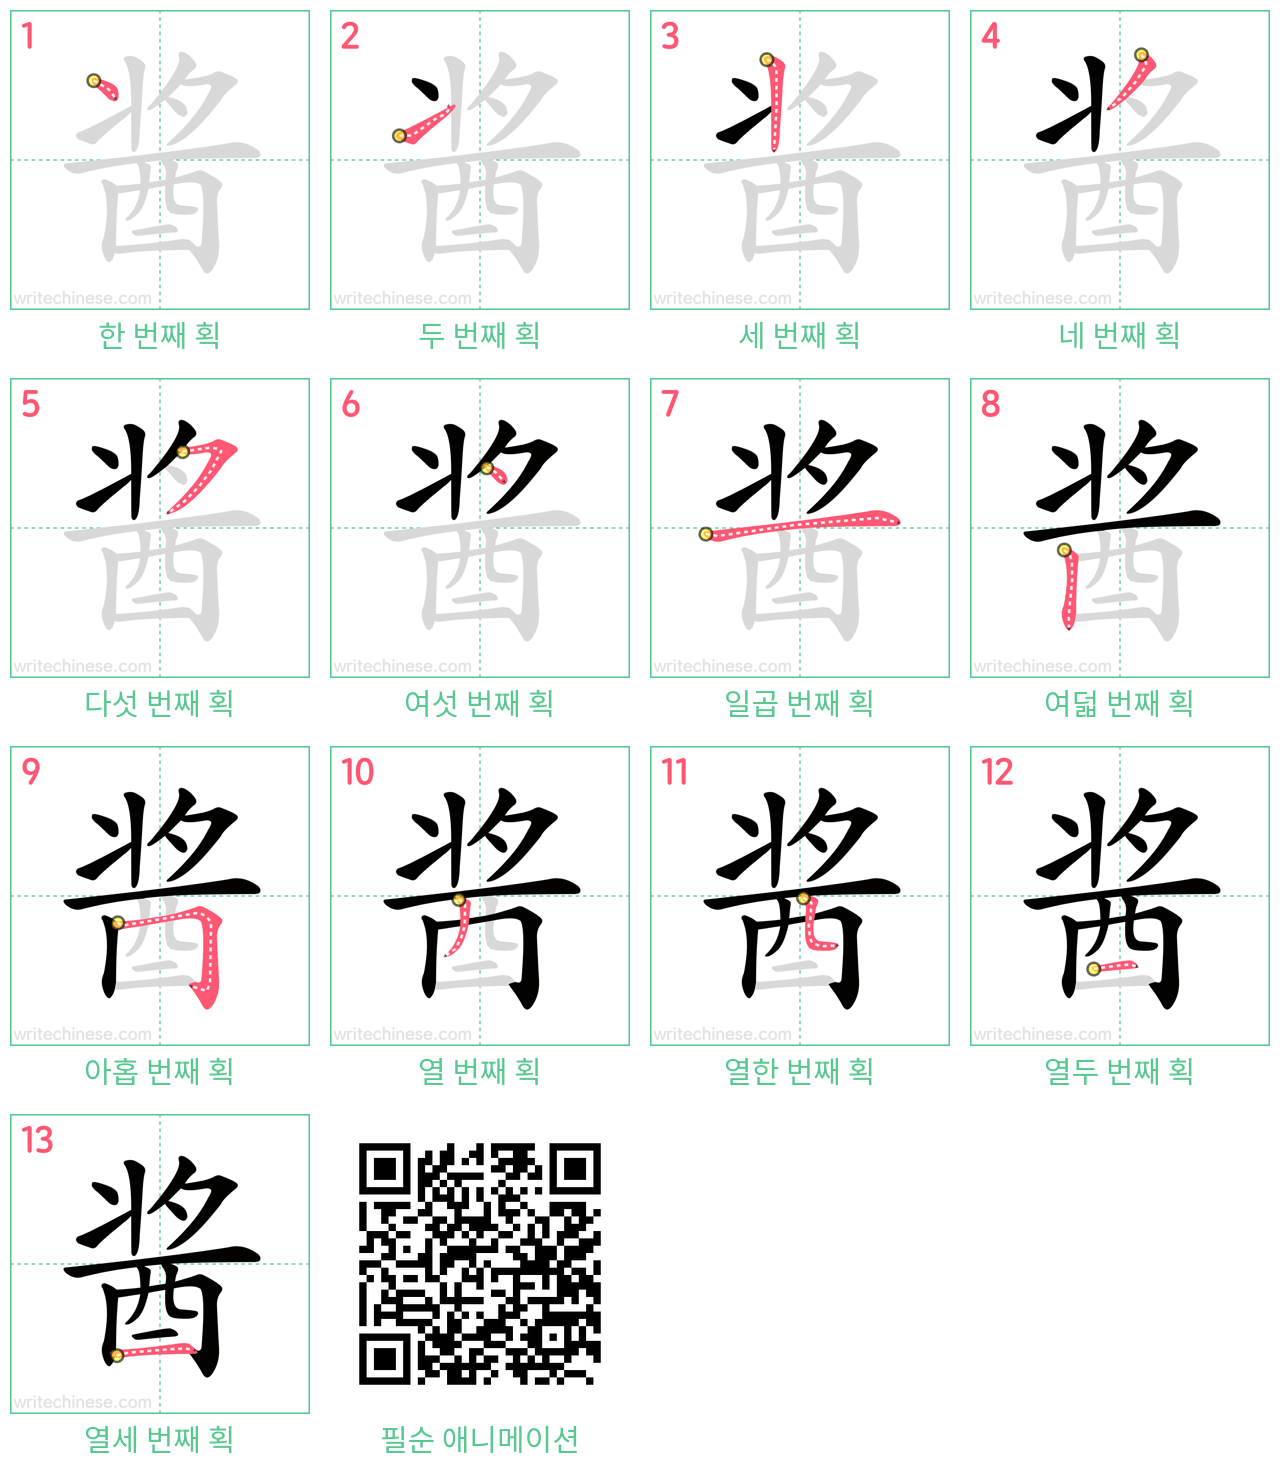 酱 step-by-step stroke order diagrams